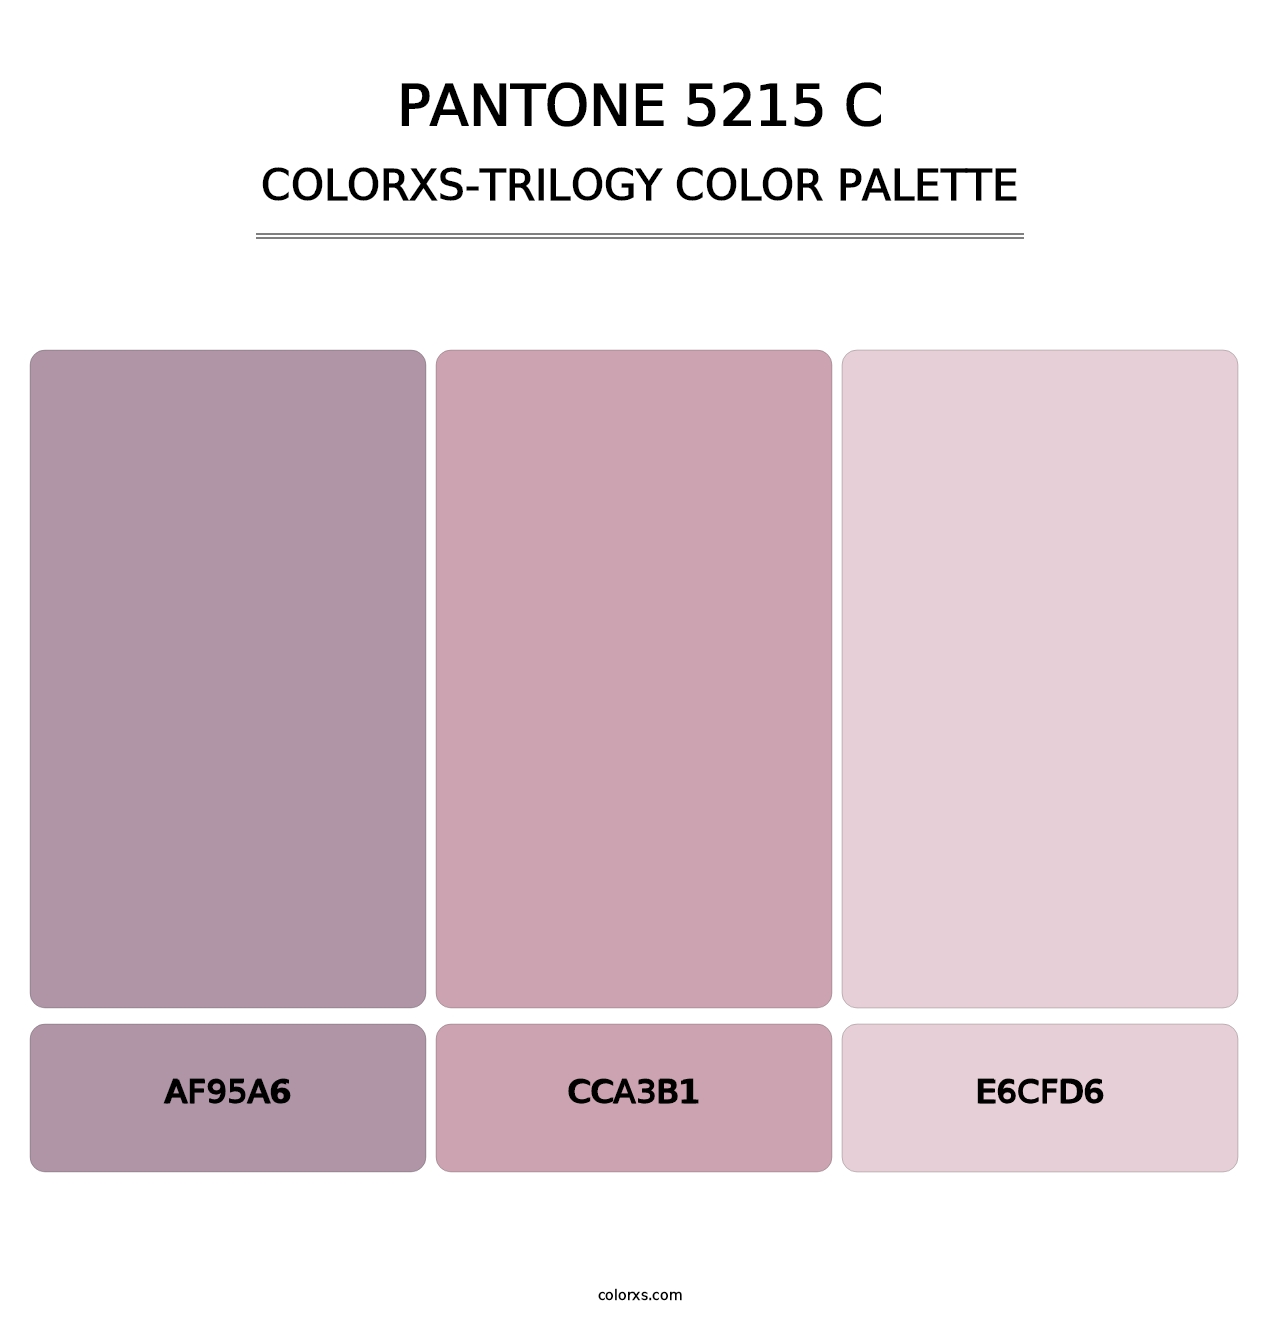 PANTONE 5215 C - Colorxs Trilogy Palette